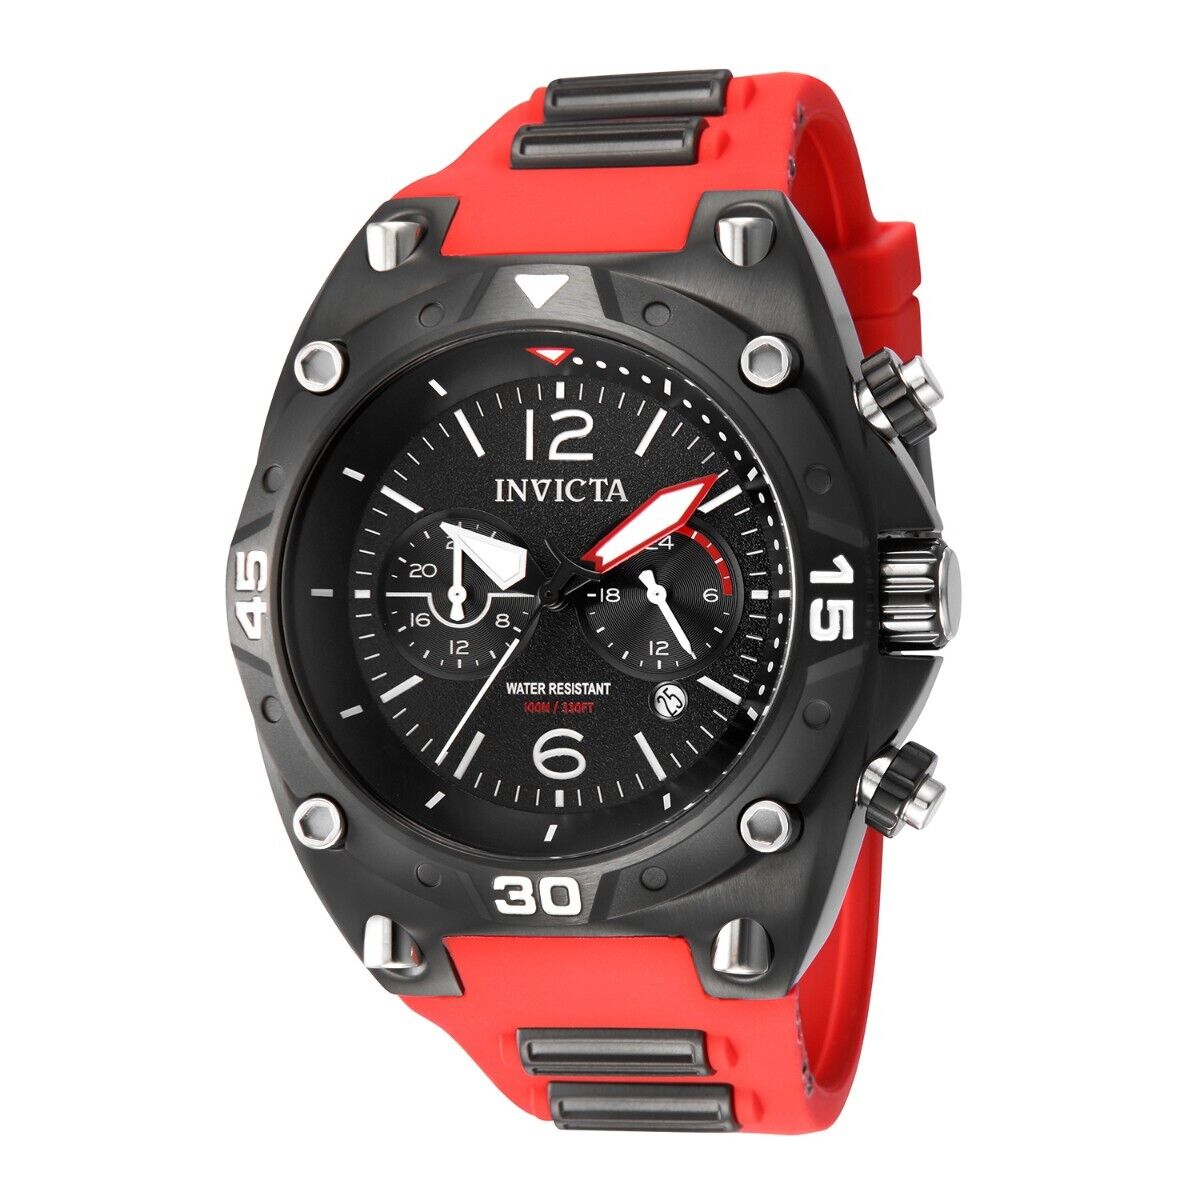 Contratado Sencillez Allí Reloj para hombre Invicta Aviator - 50 mm, negro, rojo 40290 NUEVO | eBay